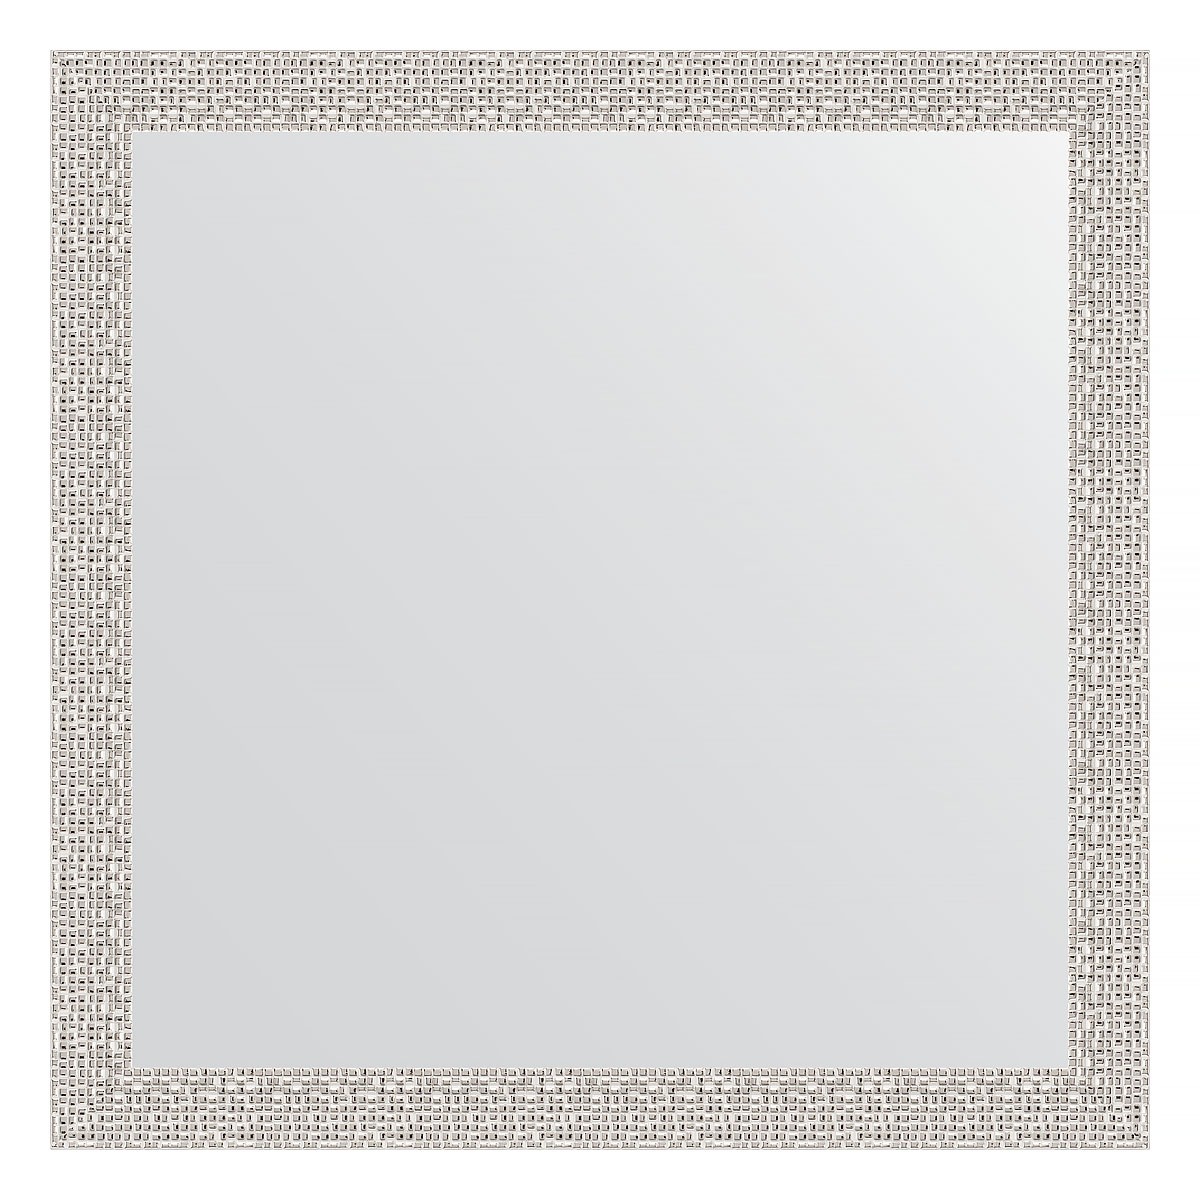 Зеркало в багетной раме Evoform мозаика хром 46 мм 61х61 см